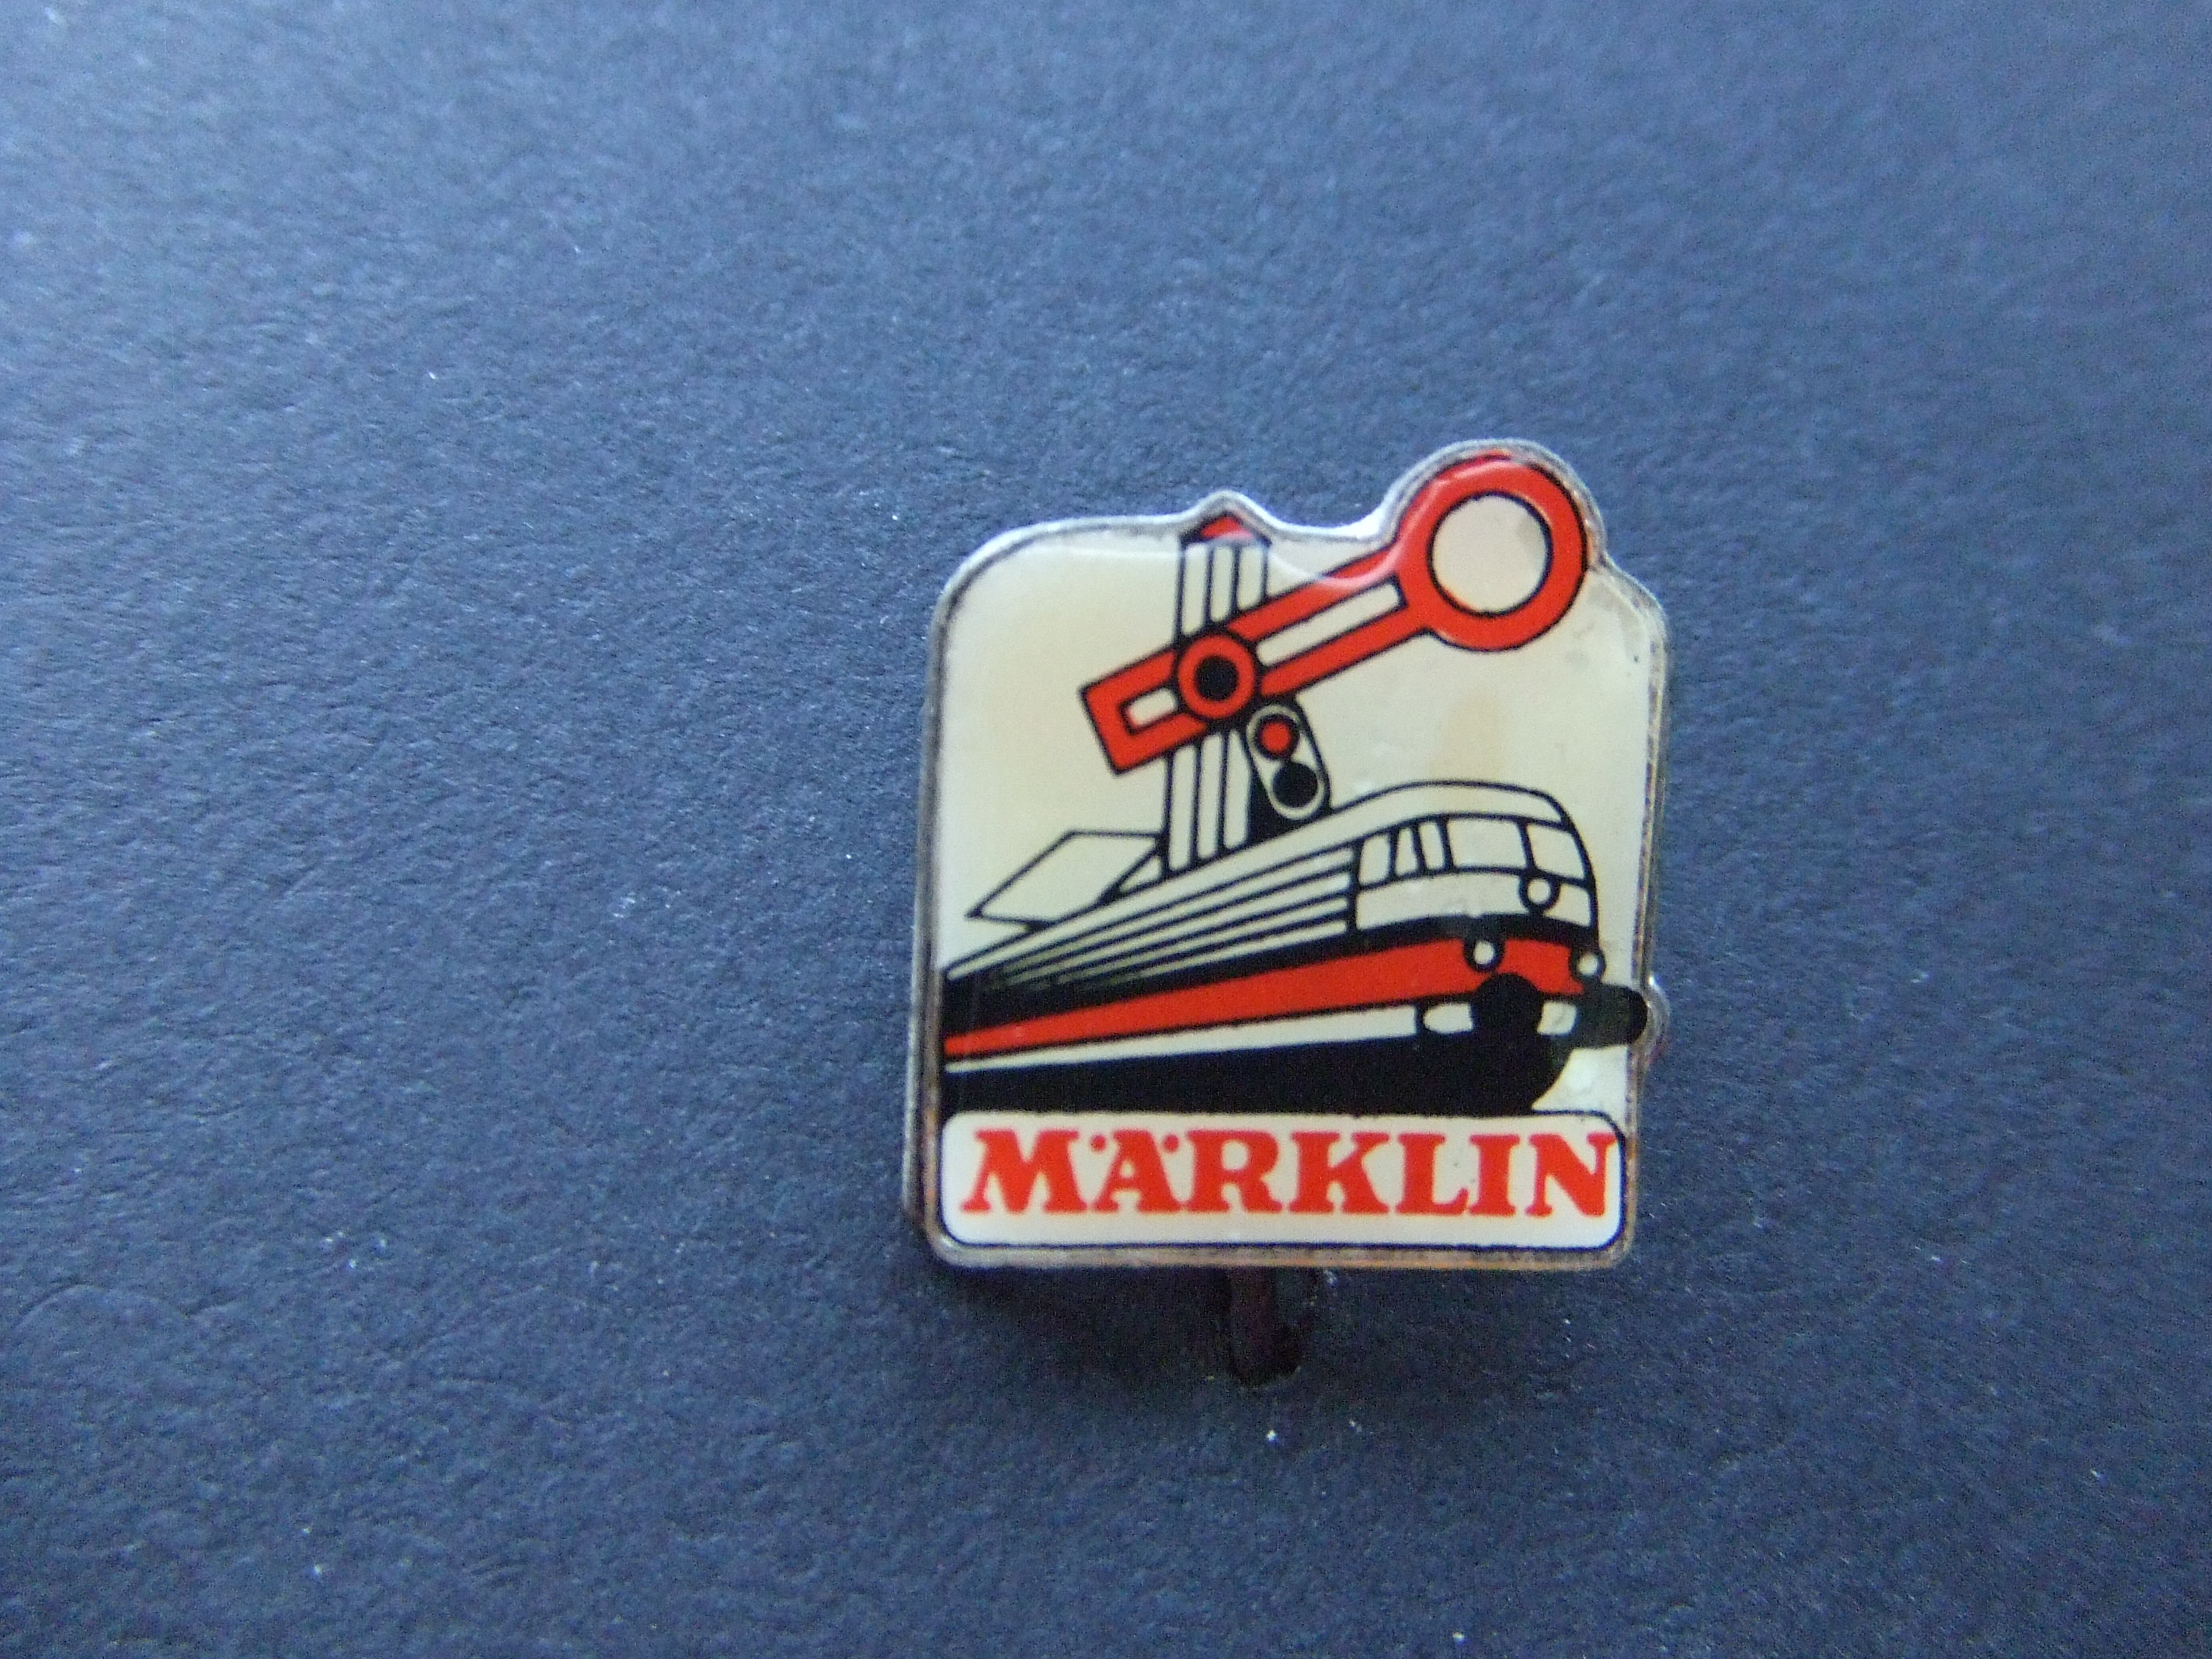 Marklin modelspoorbaan treinen stoplicht